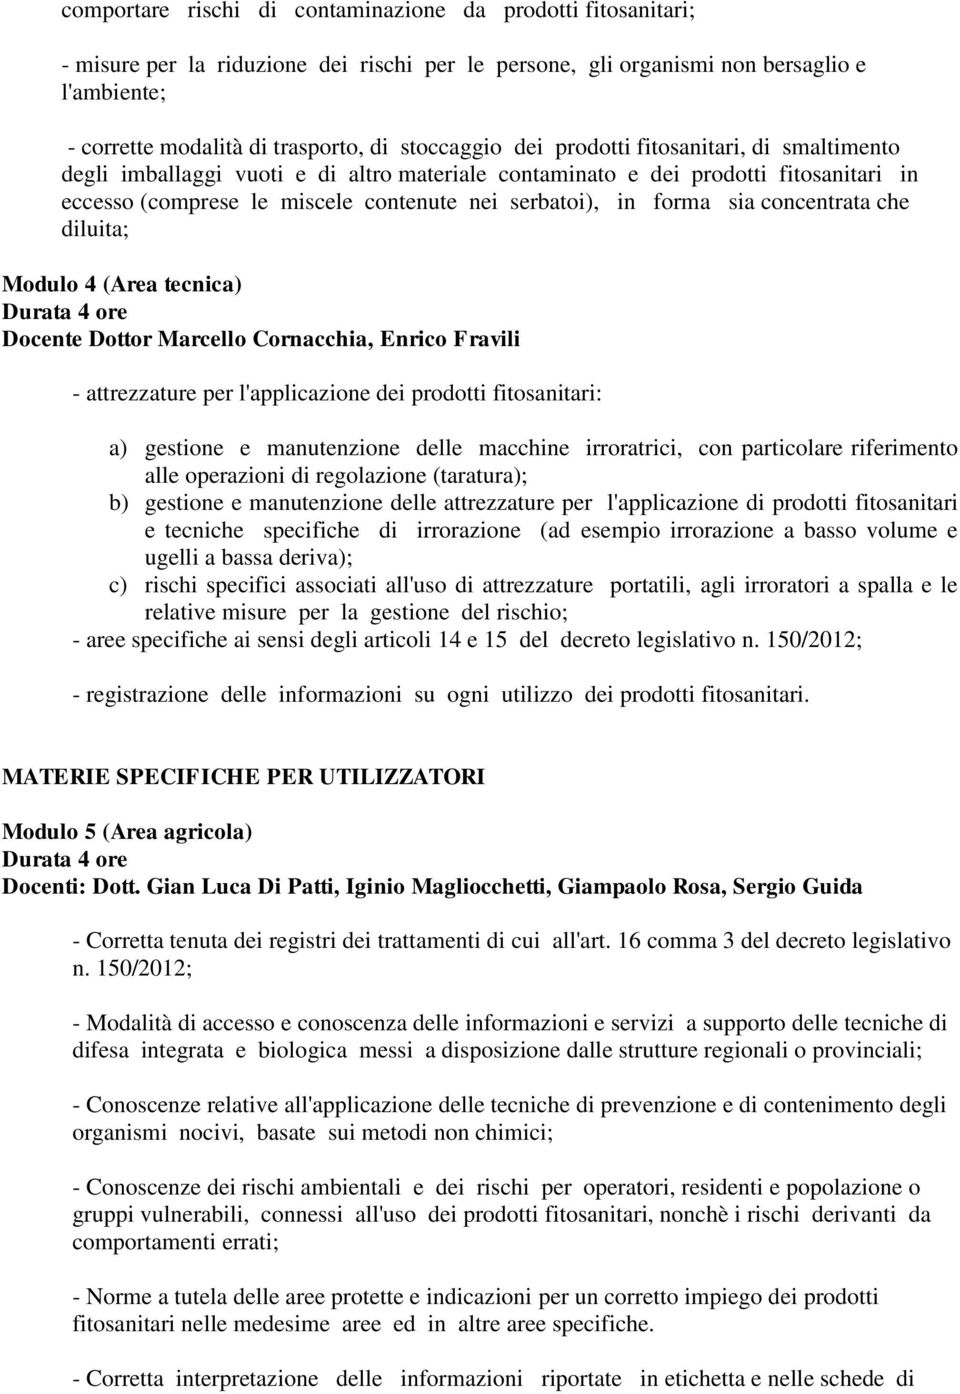 forma sia concentrata che diluita; Modulo 4 (Area tecnica) Docente Dottor Marcello Cornacchia, Enrico Fravili - attrezzature per l'applicazione dei prodotti fitosanitari: a) gestione e manutenzione